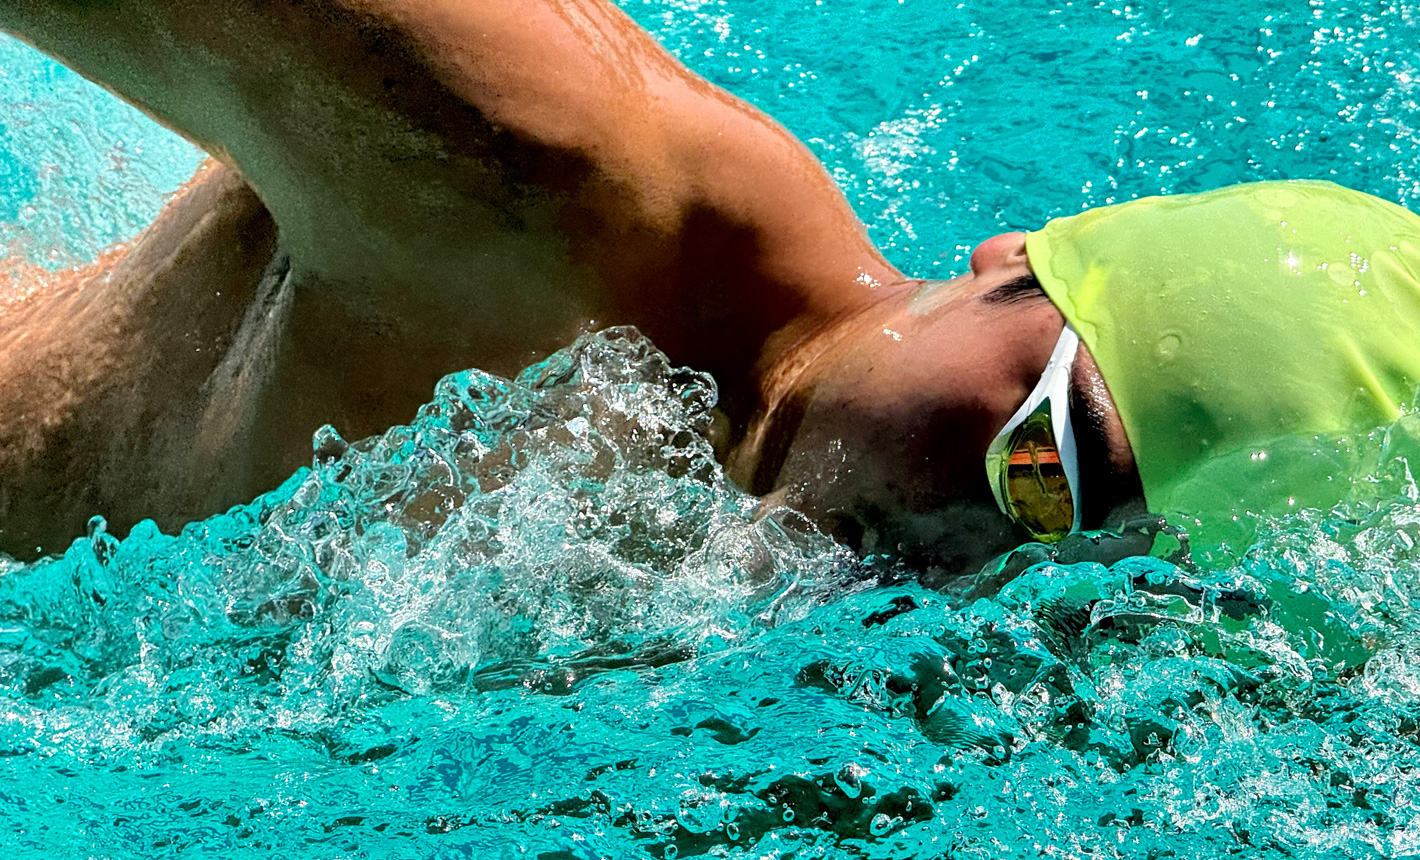 Bardzo szczegółowe zdjęcie w zbliżeniu przedstawiające mężczyznę pływającego w basenie i rozpryskującą się wokół niego wodę